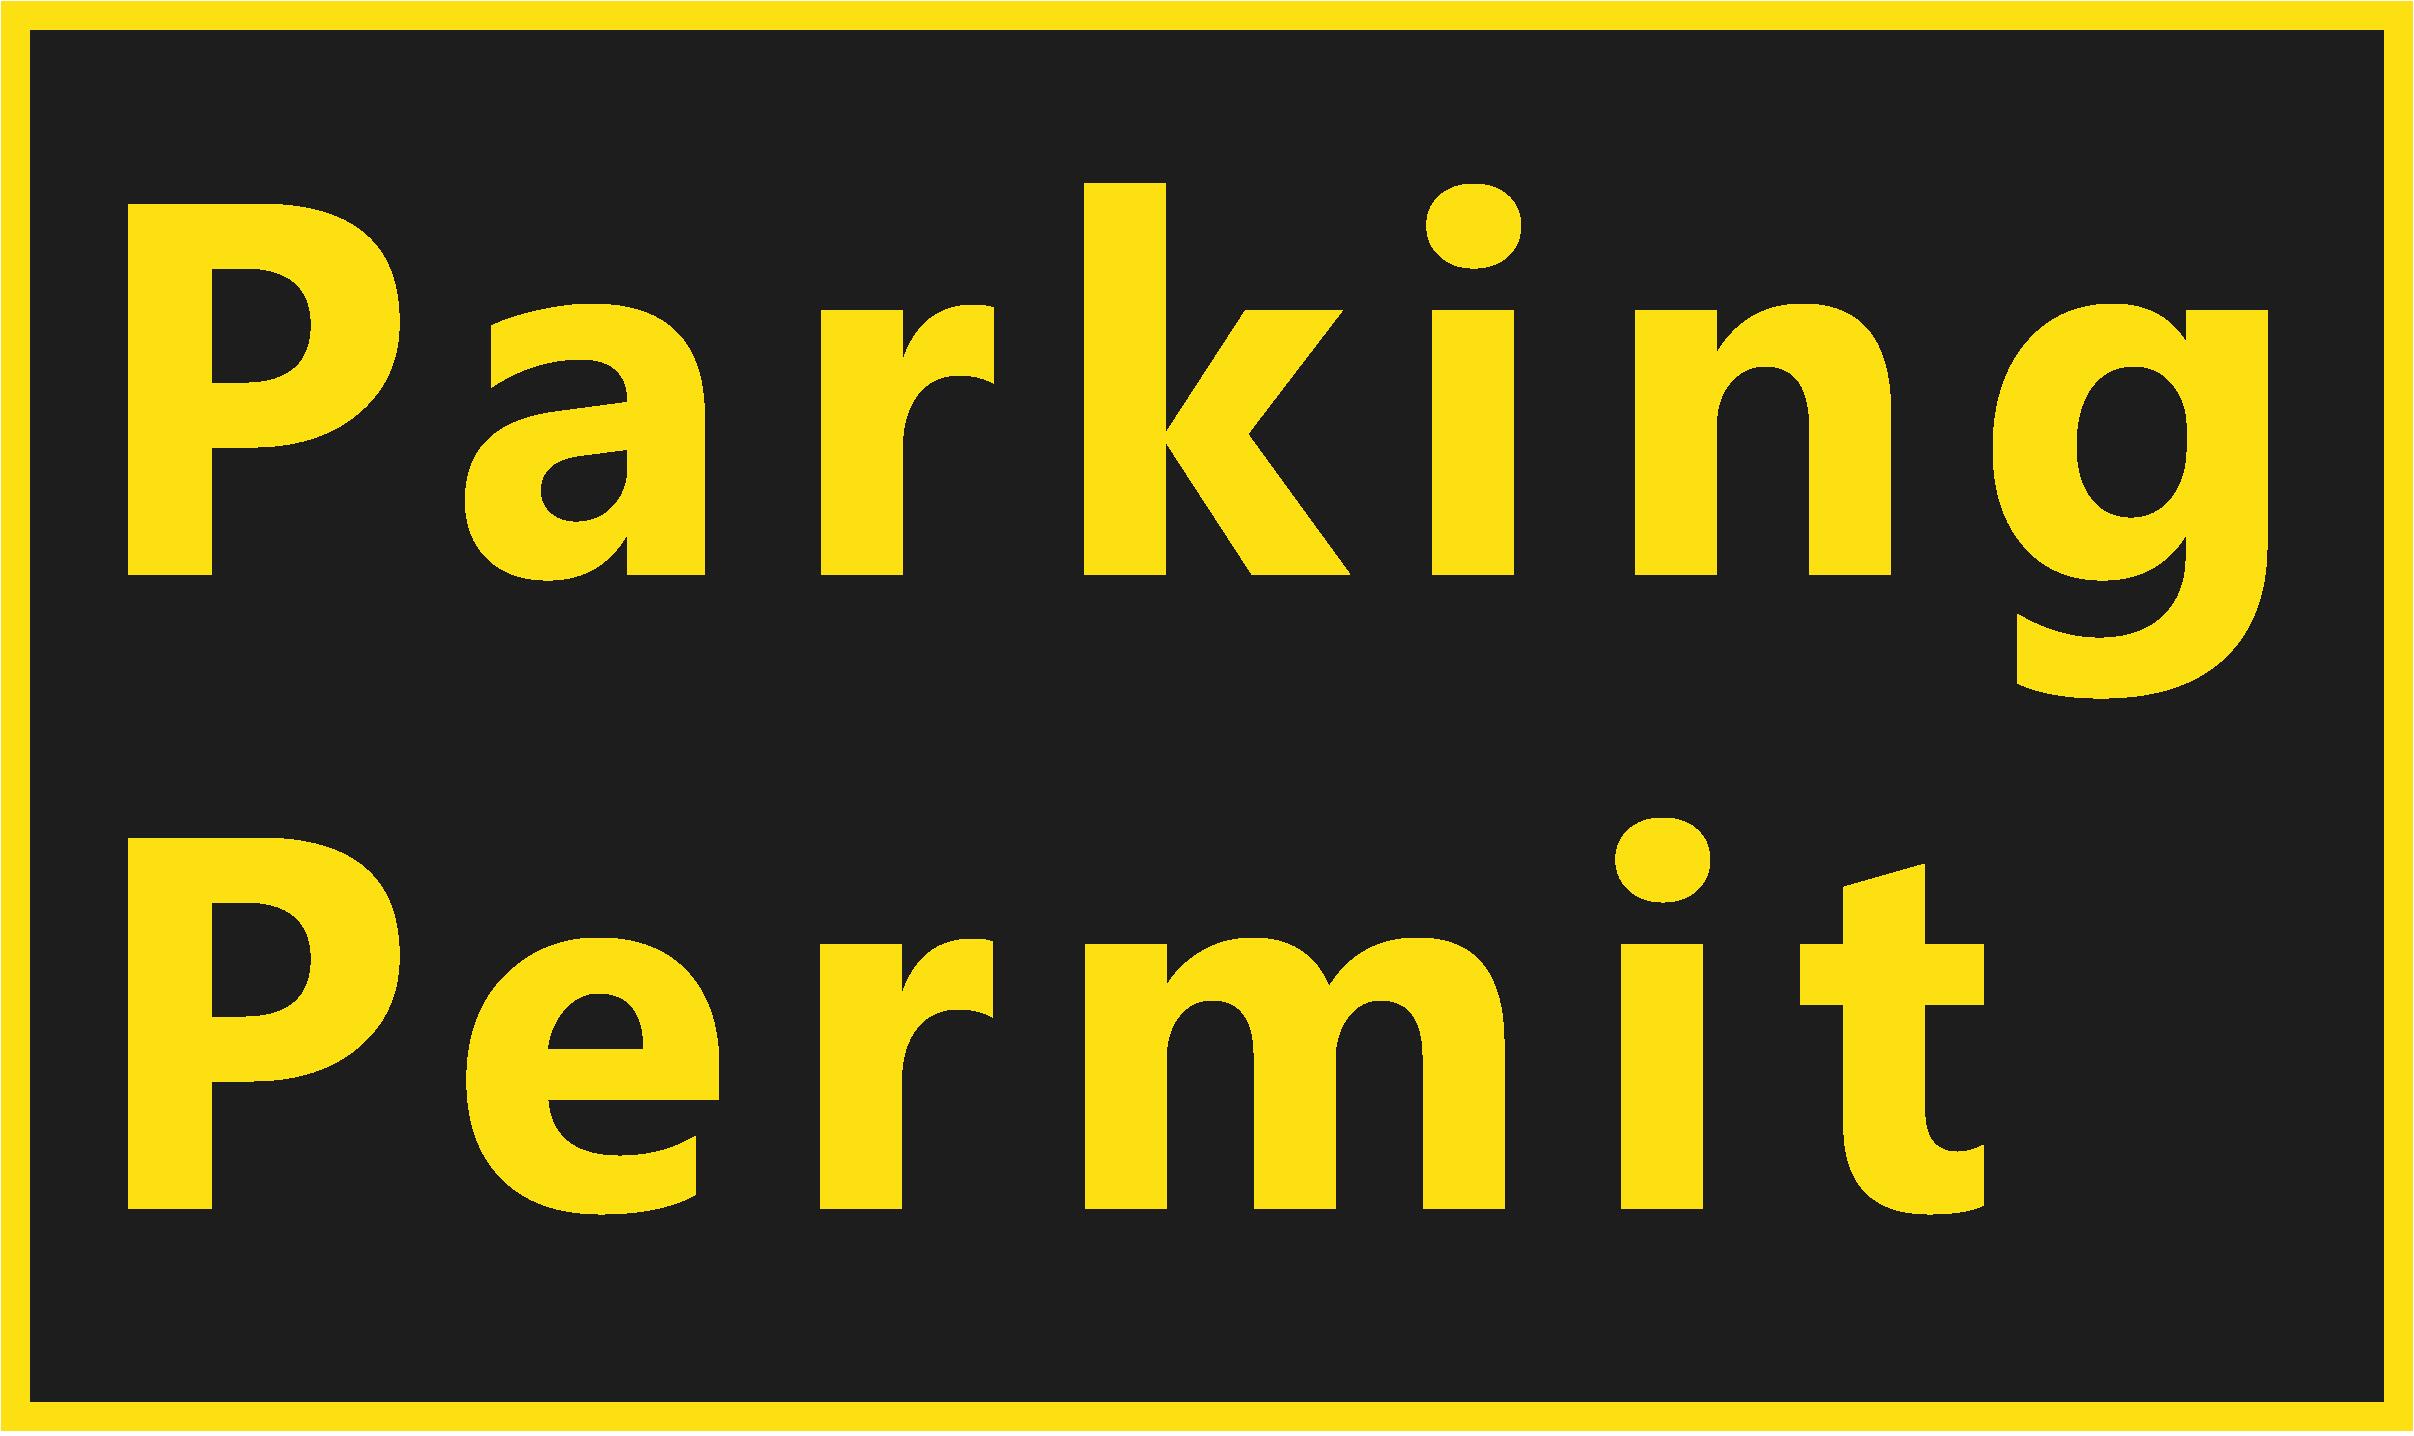 Parking permit banner